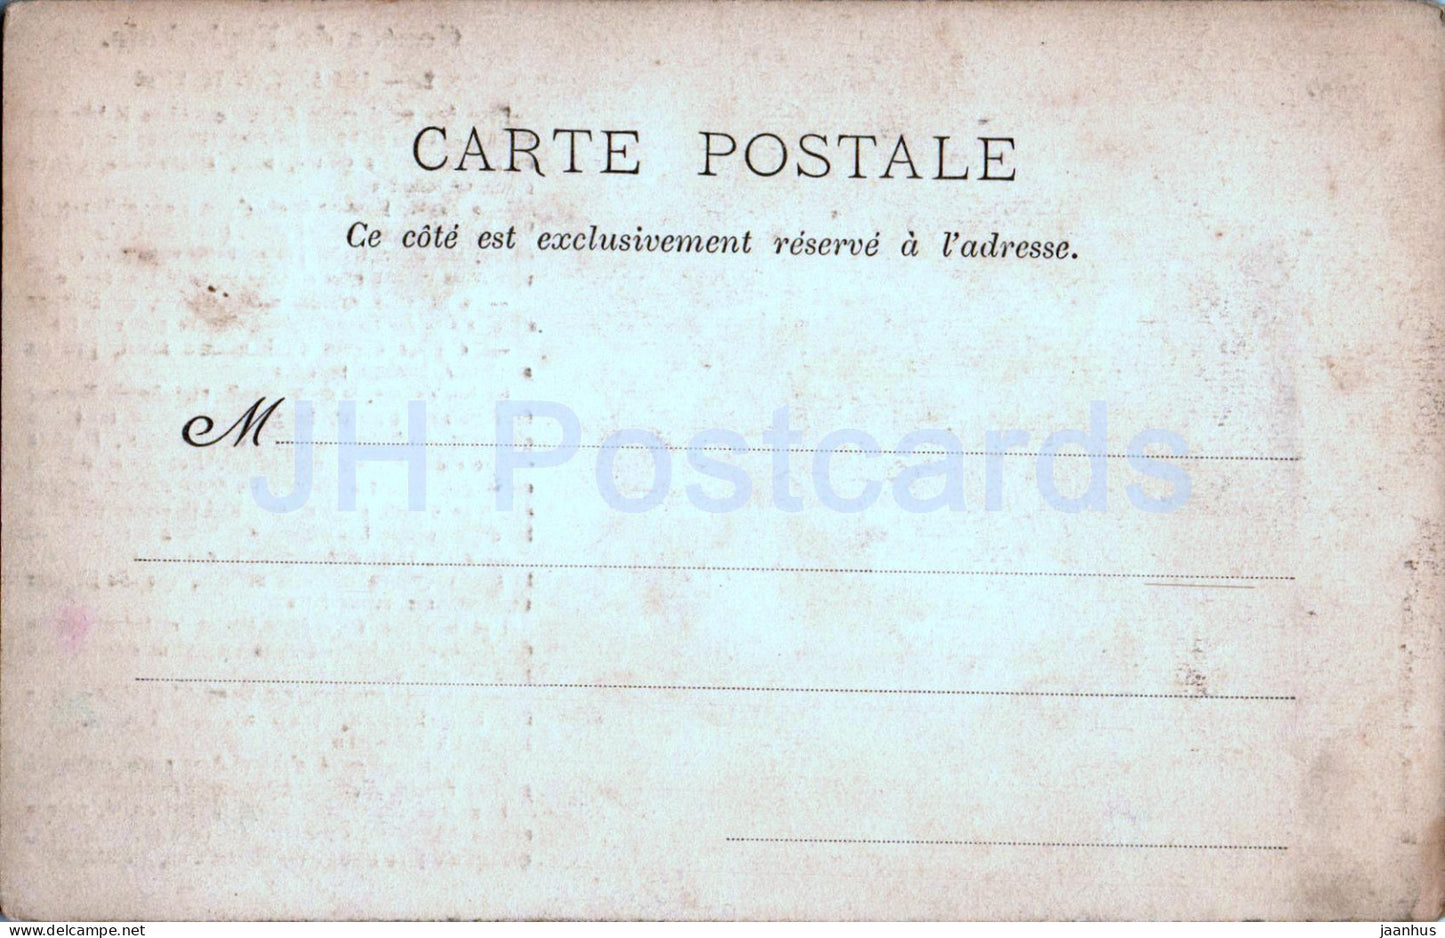 Contes de Fraimbois - Les Apotres Voleurs - 2 - carte postale ancienne - France - inutilisée 